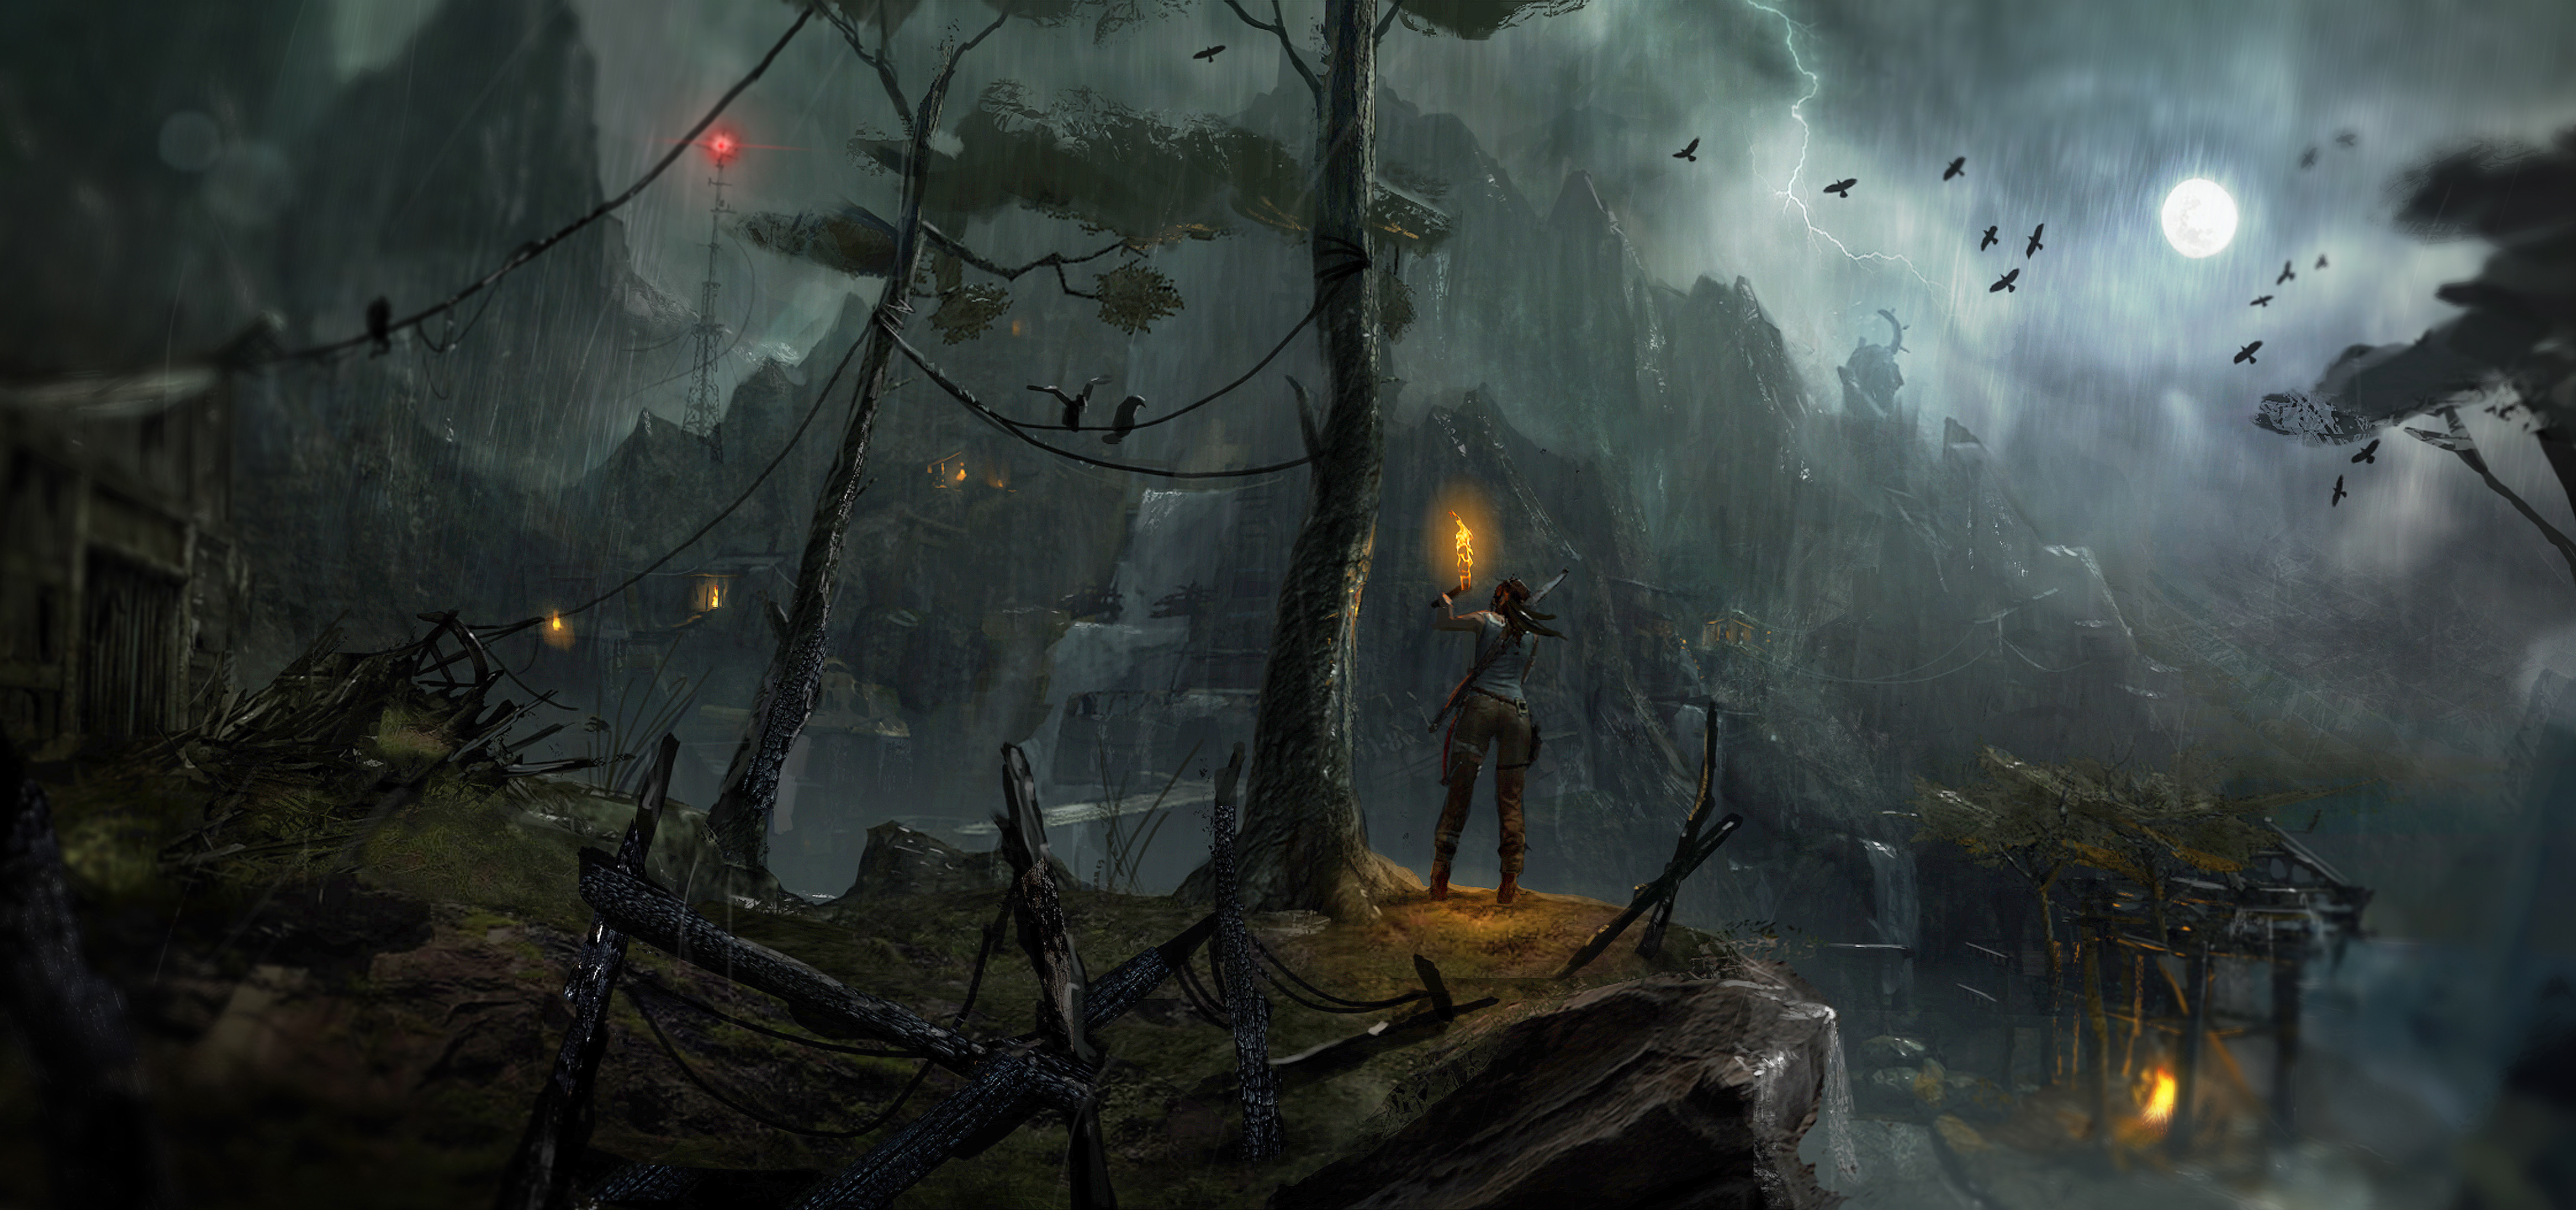 4k Wallpaper Games Birds Lightning Moon Rain Torch Lara Croft